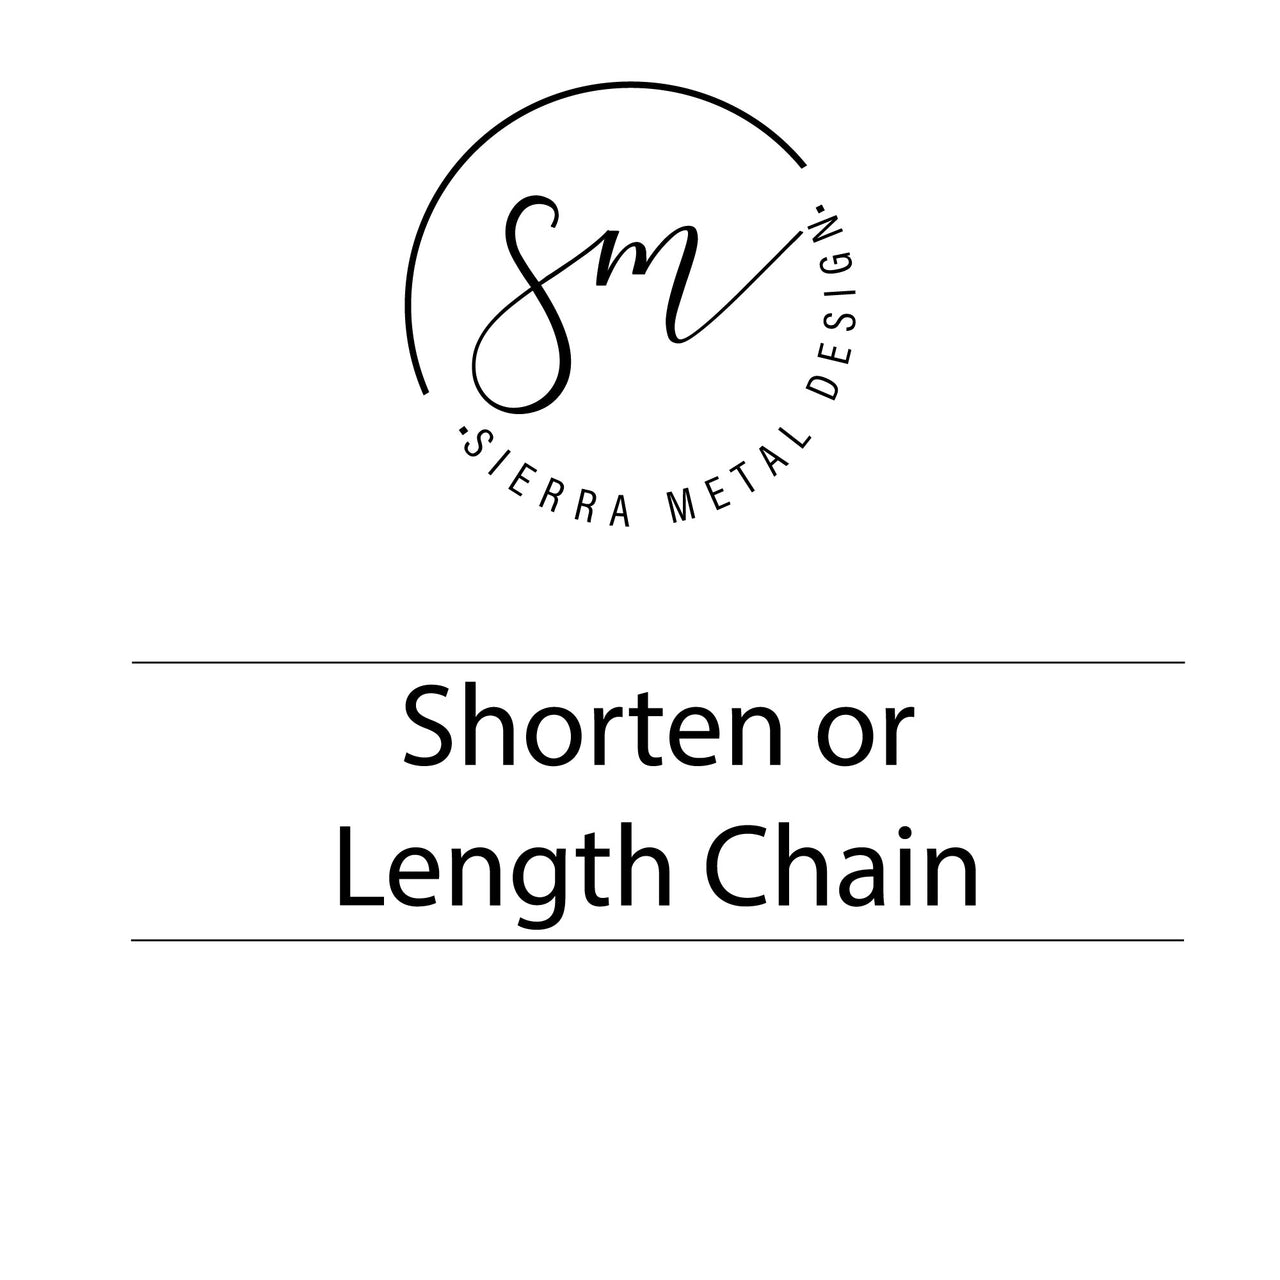 Shorten or Lengthen Chain